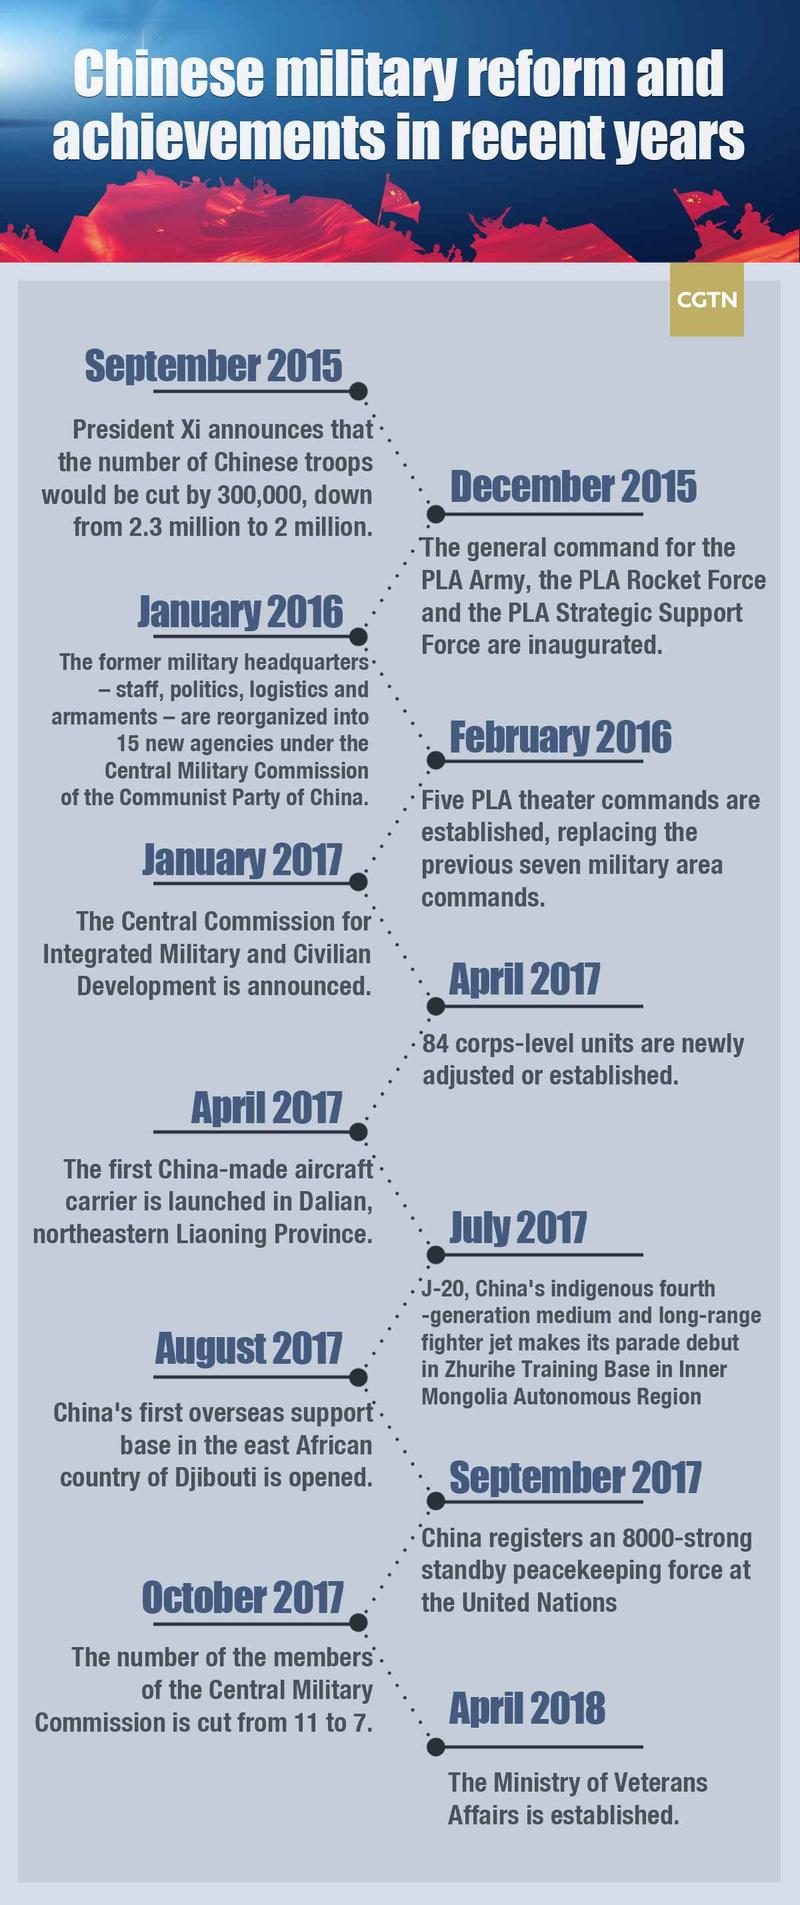 china wars timeline